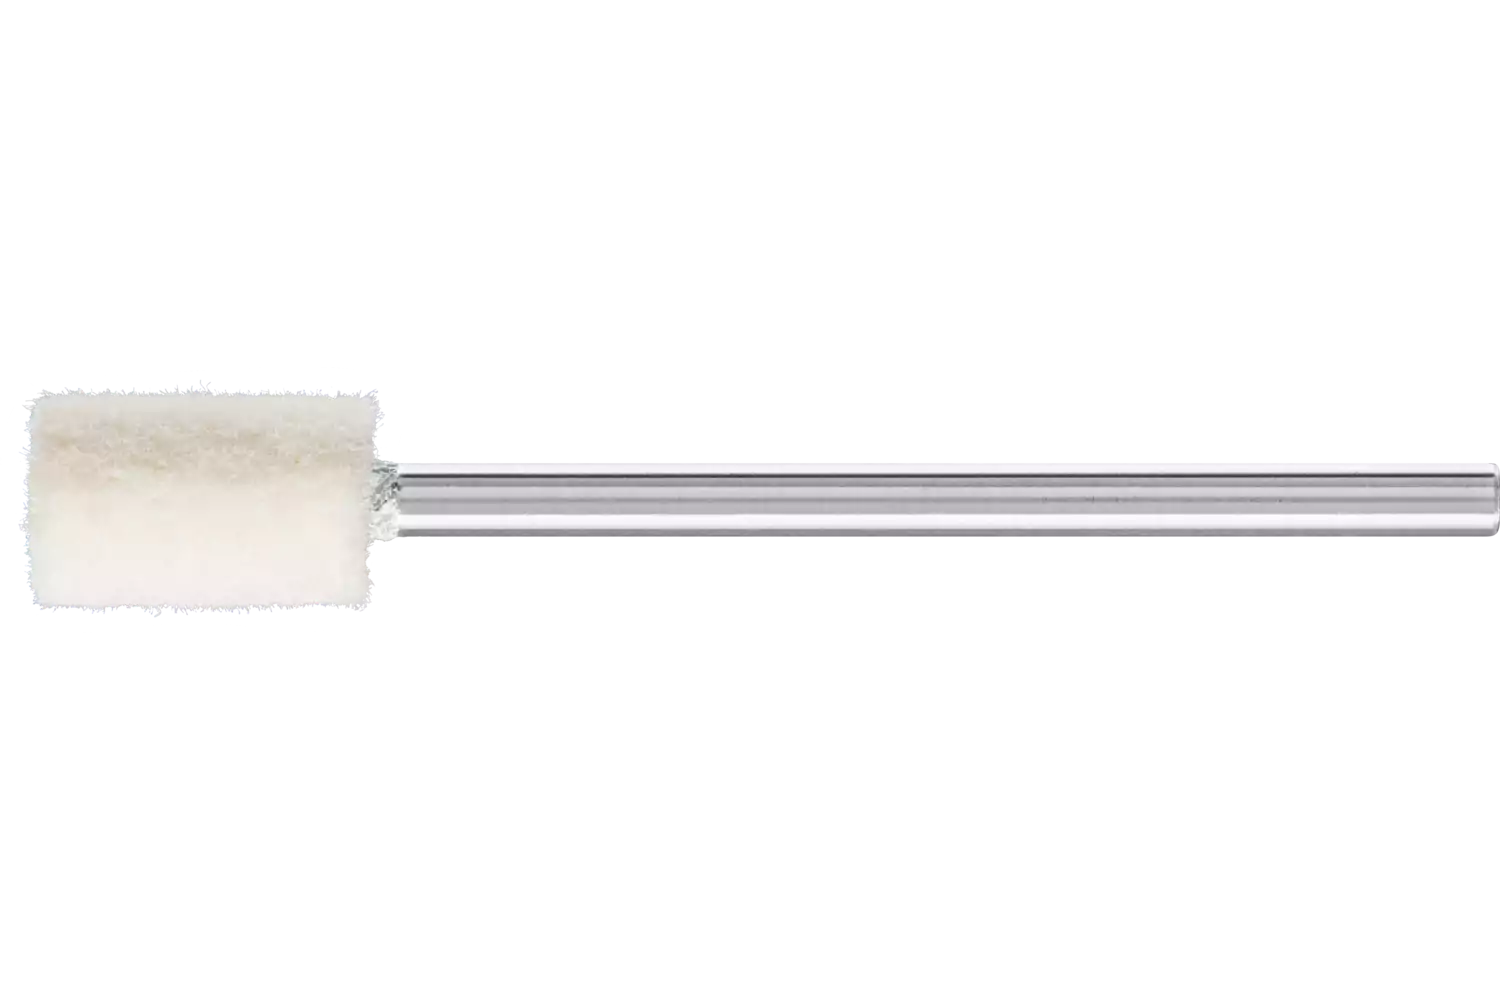 Feltri con gambo per lucidare medio-duri forma cilindrica Ø 6x10 mm, gambo Ø 2,35 mm 1